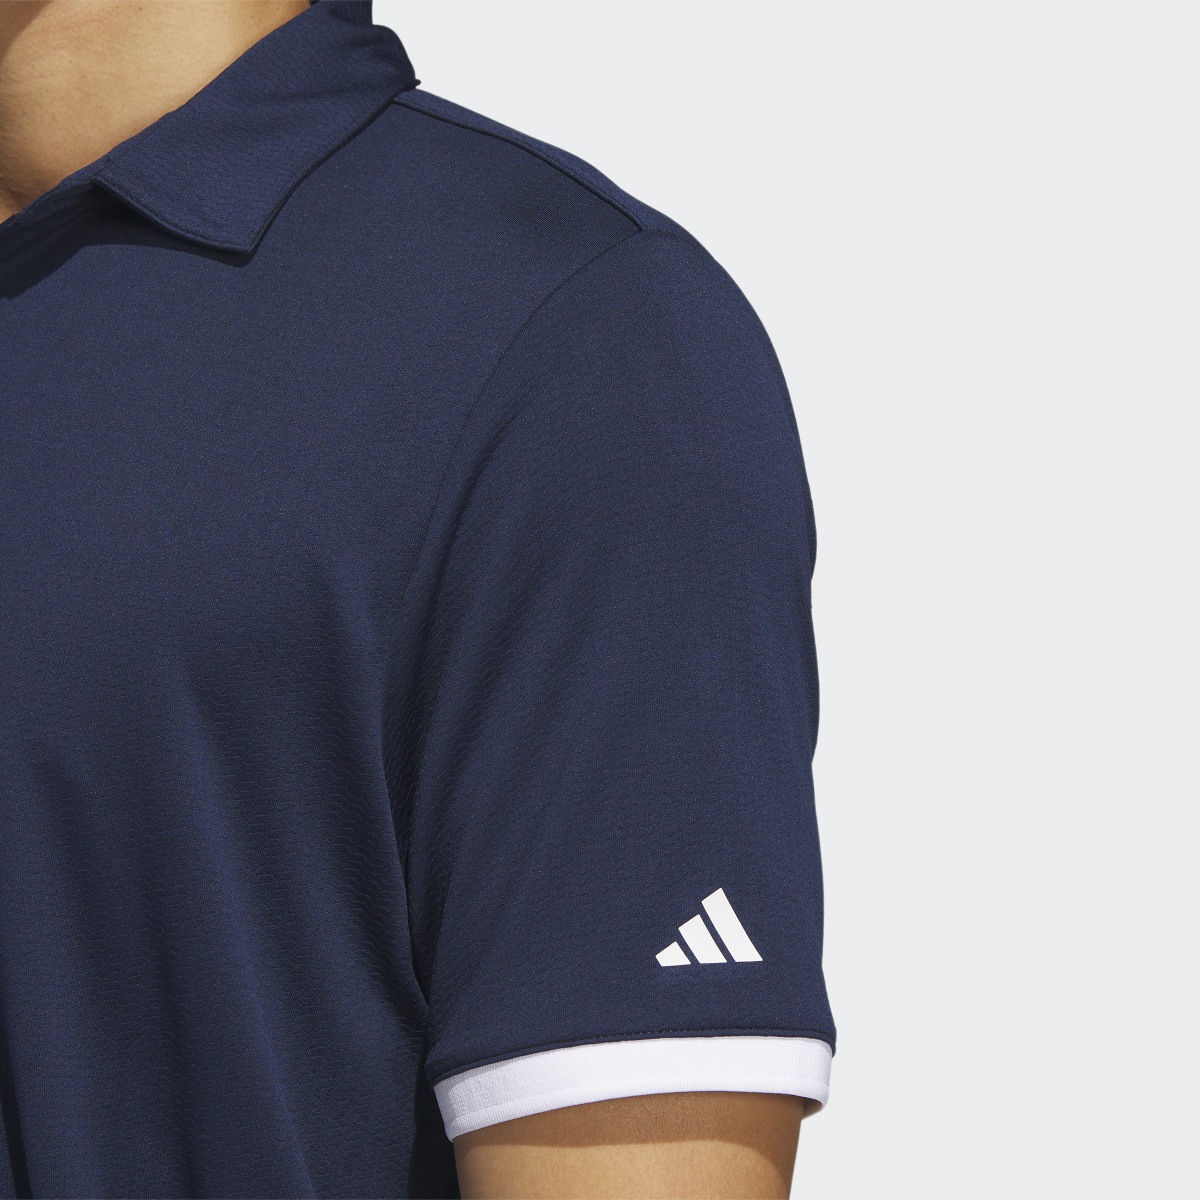 Adidas HEAT.RDY Golf Polo Shirt. 7